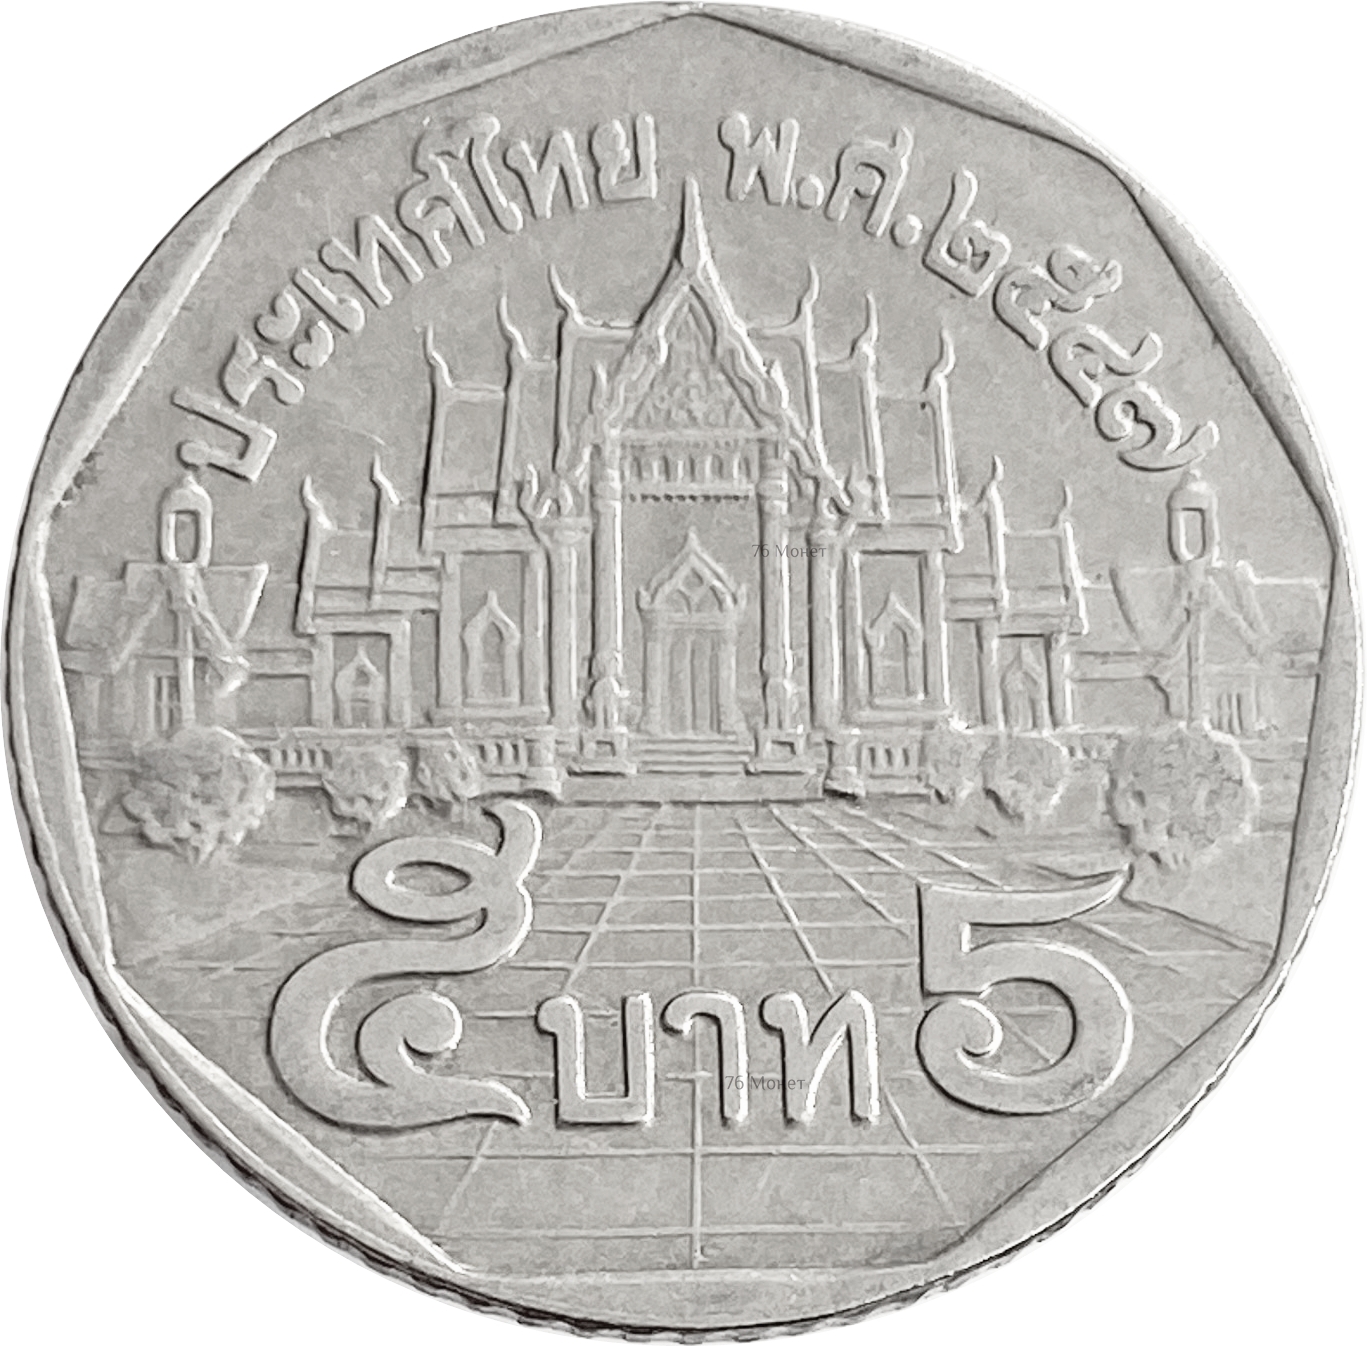 Бат к рублю на сегодня в тайланде. 5 Бат 1988-2008 Таиланд. 5 Бат монета.